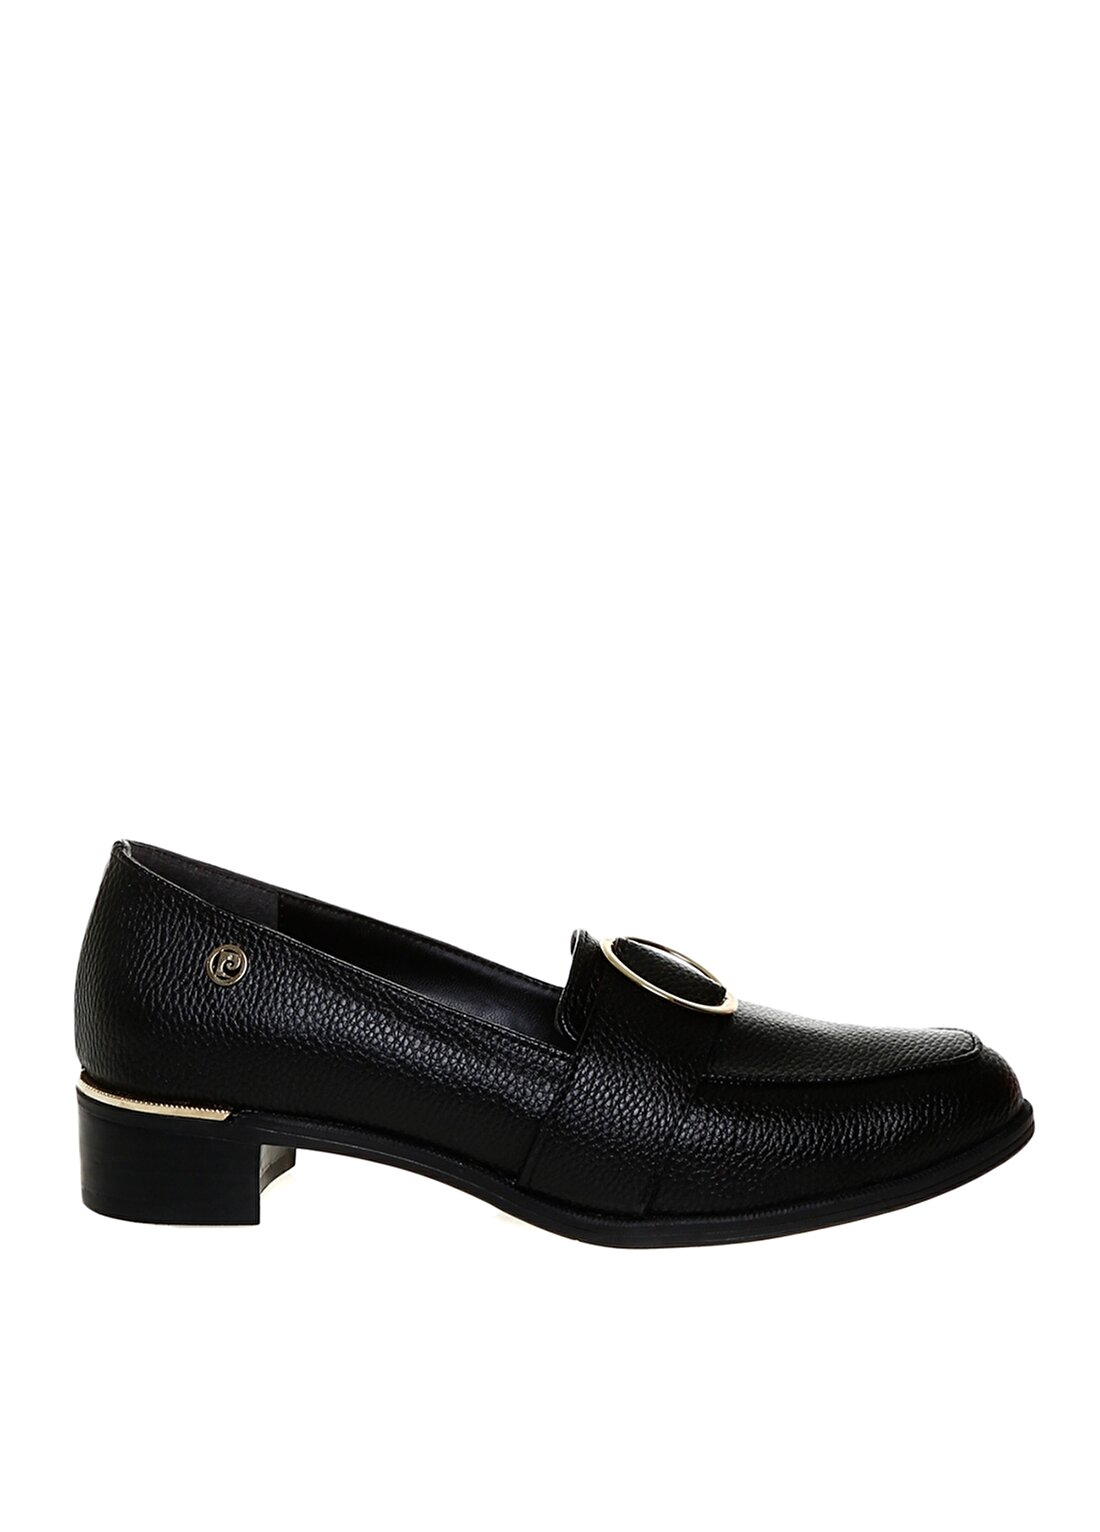 Pierre Cardin Logo Baskılı Yuvarlak Tokalı Siyah Kadın Topuklu Ayakkabı